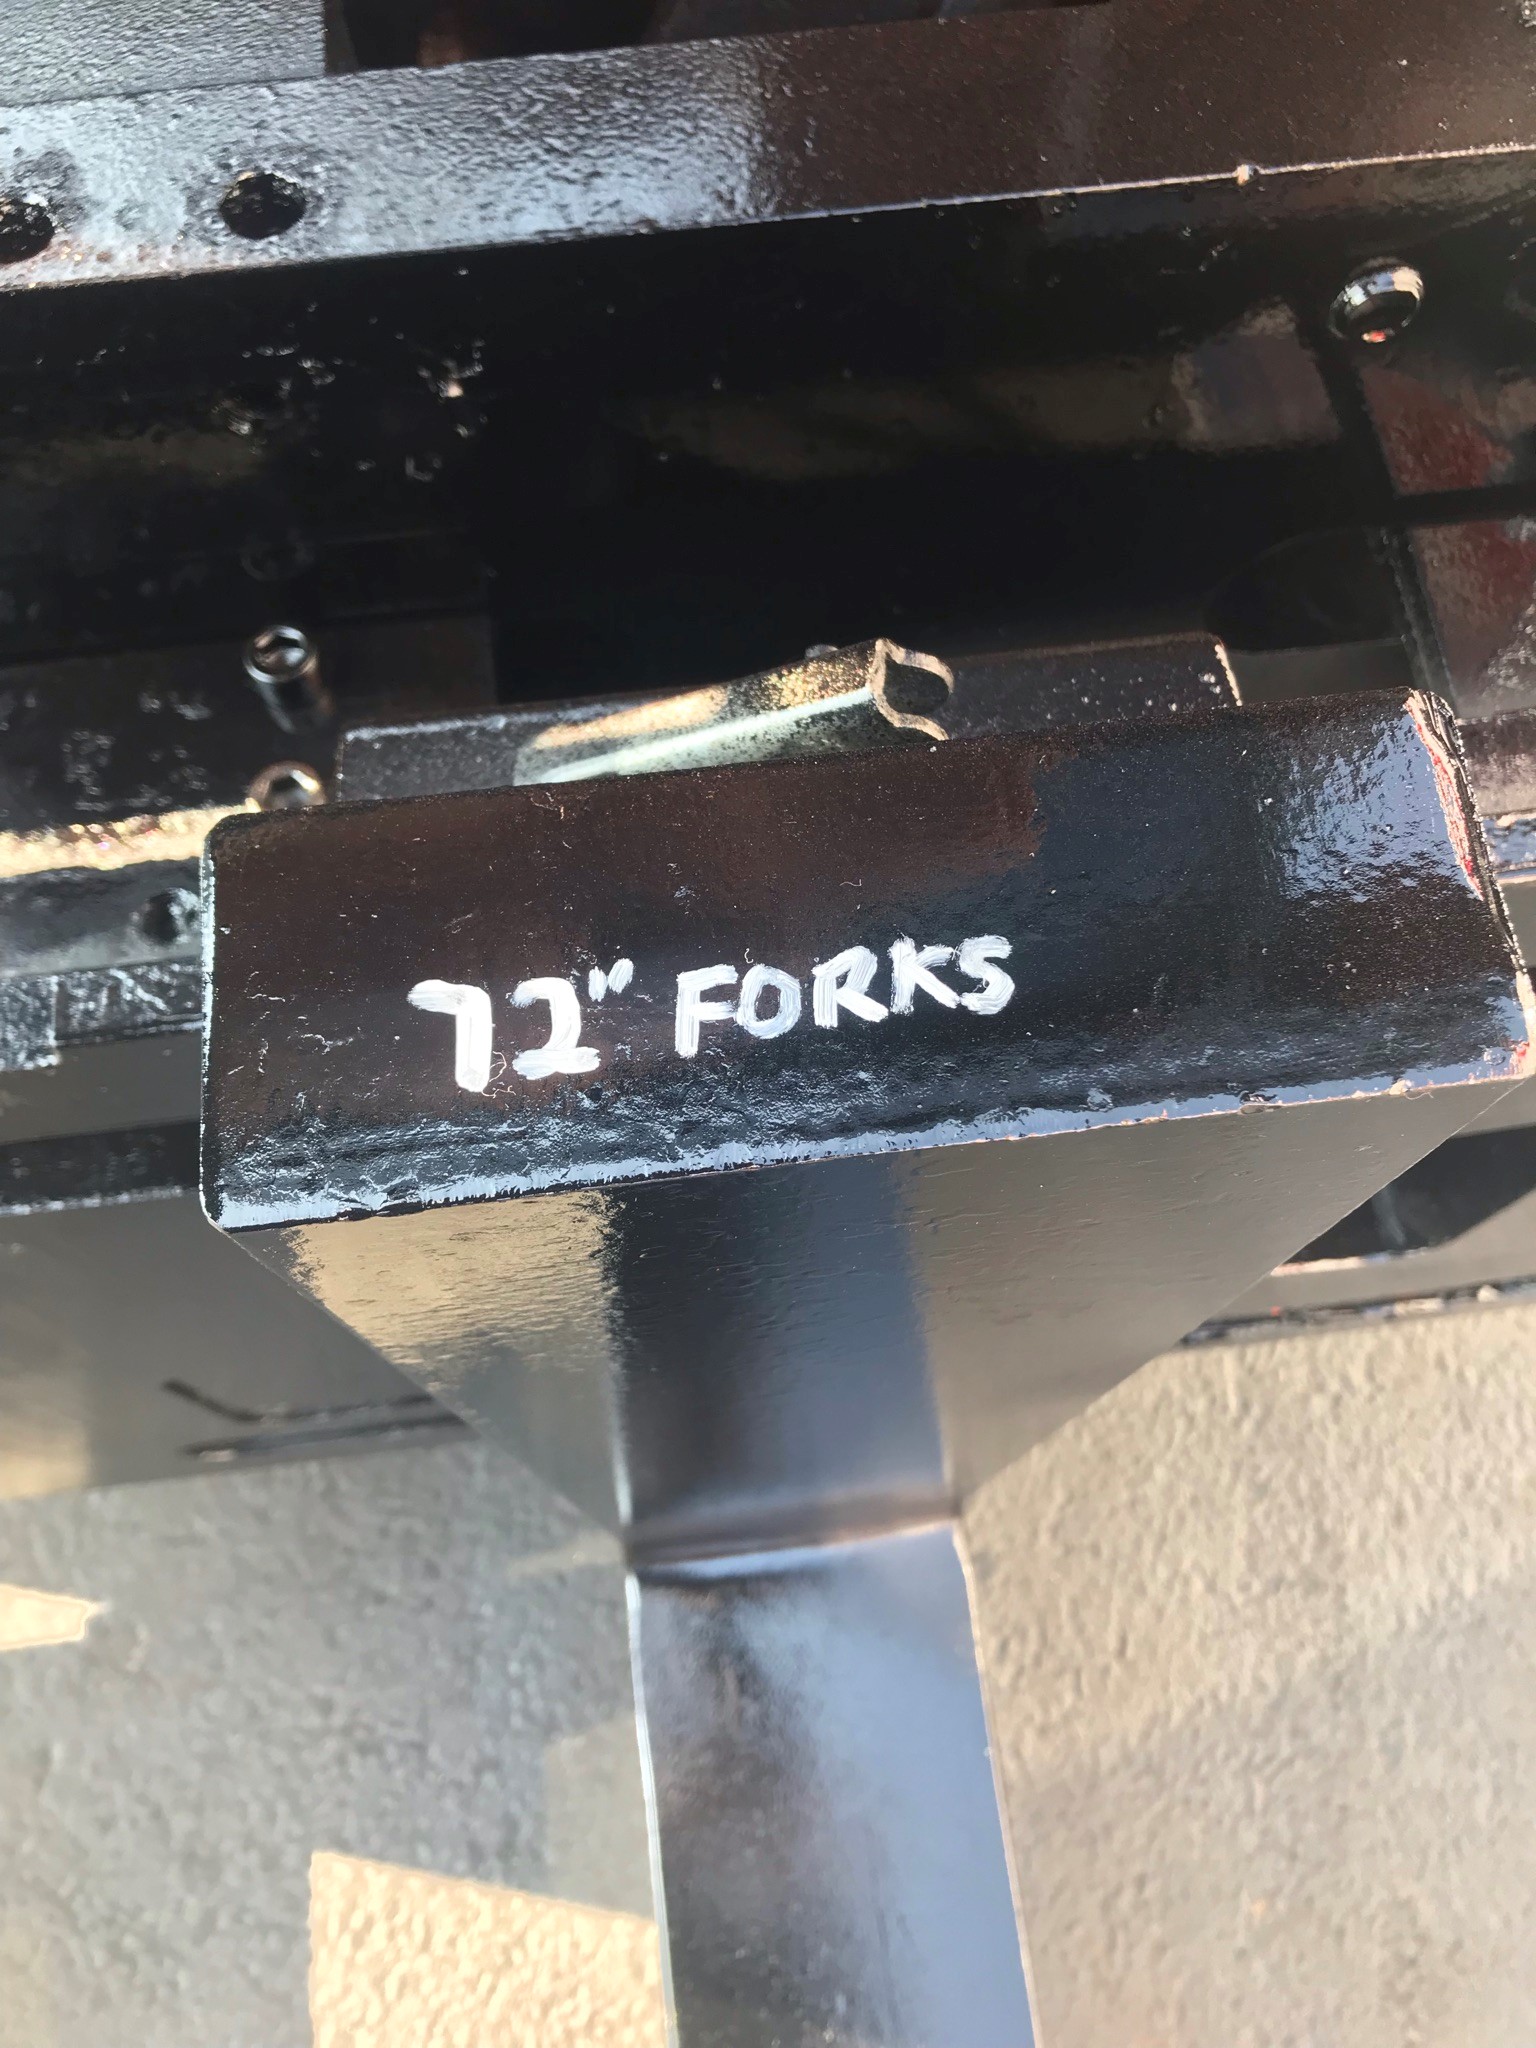 72" forks 1997 toyota forklift for sale